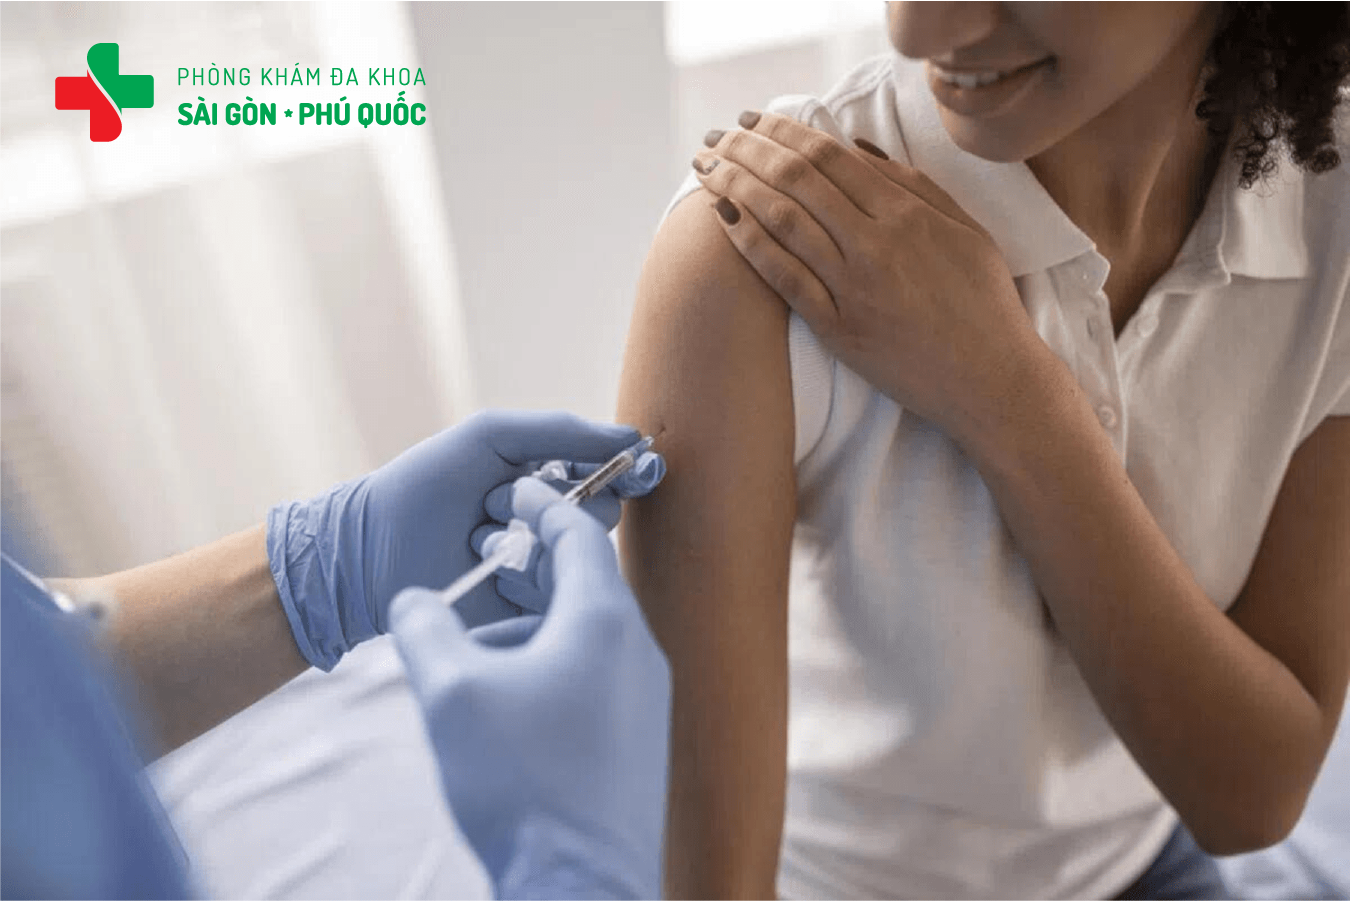 Tiêm vaccine HPV tại Phòng khám Đa khoa Sài Gòn Phú Quốc